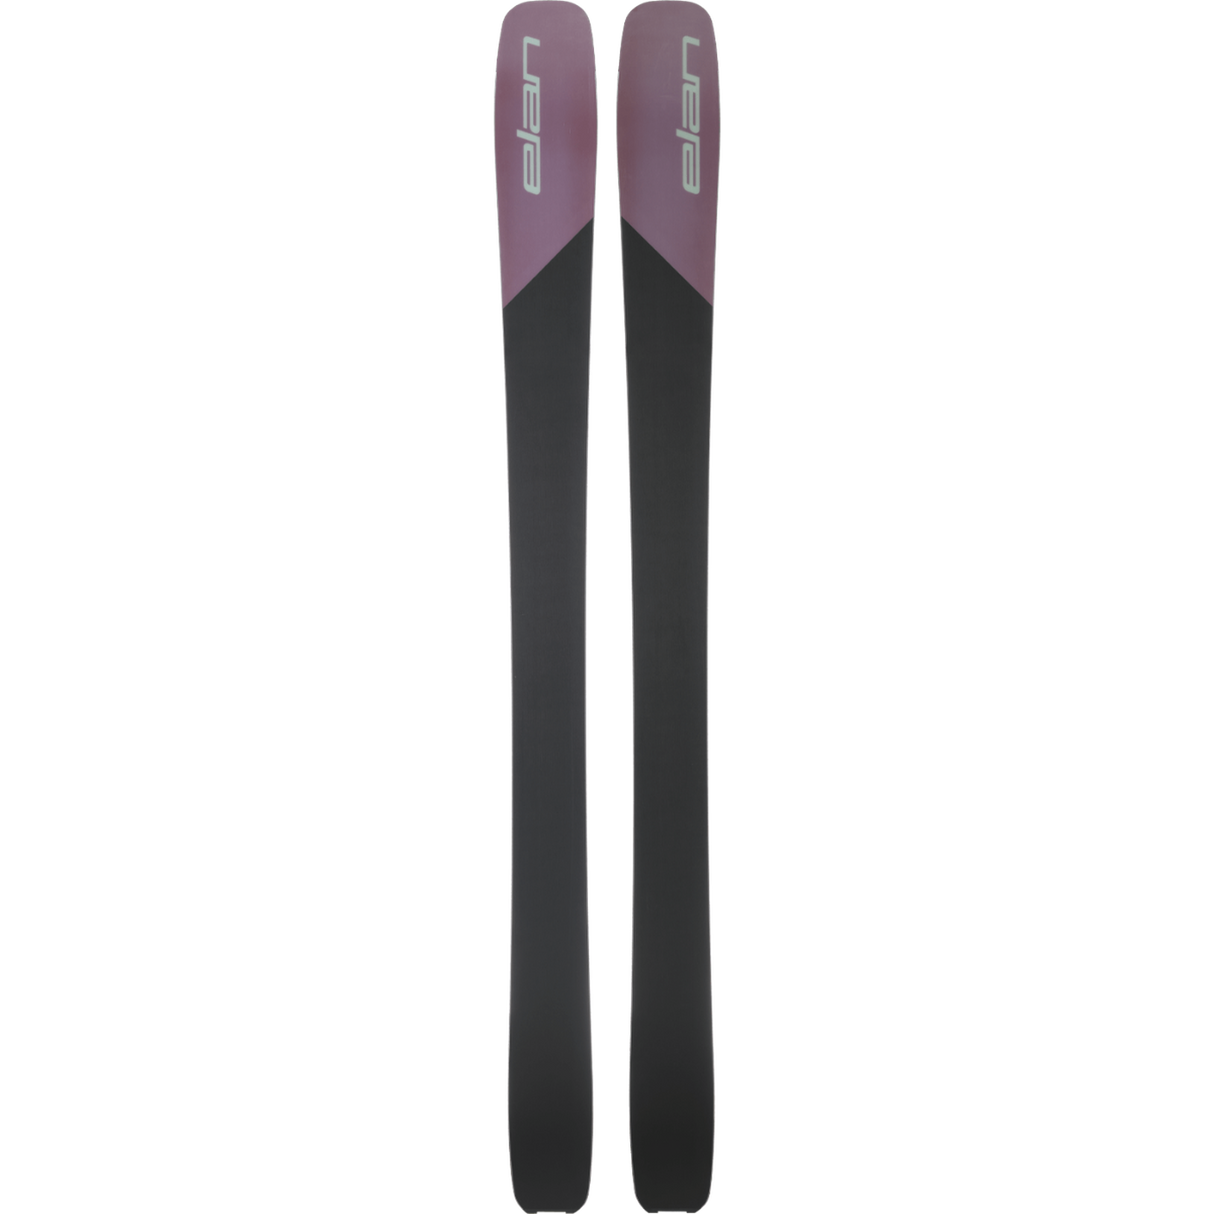 Elan 2024 RIPSTICK 102 W Ski